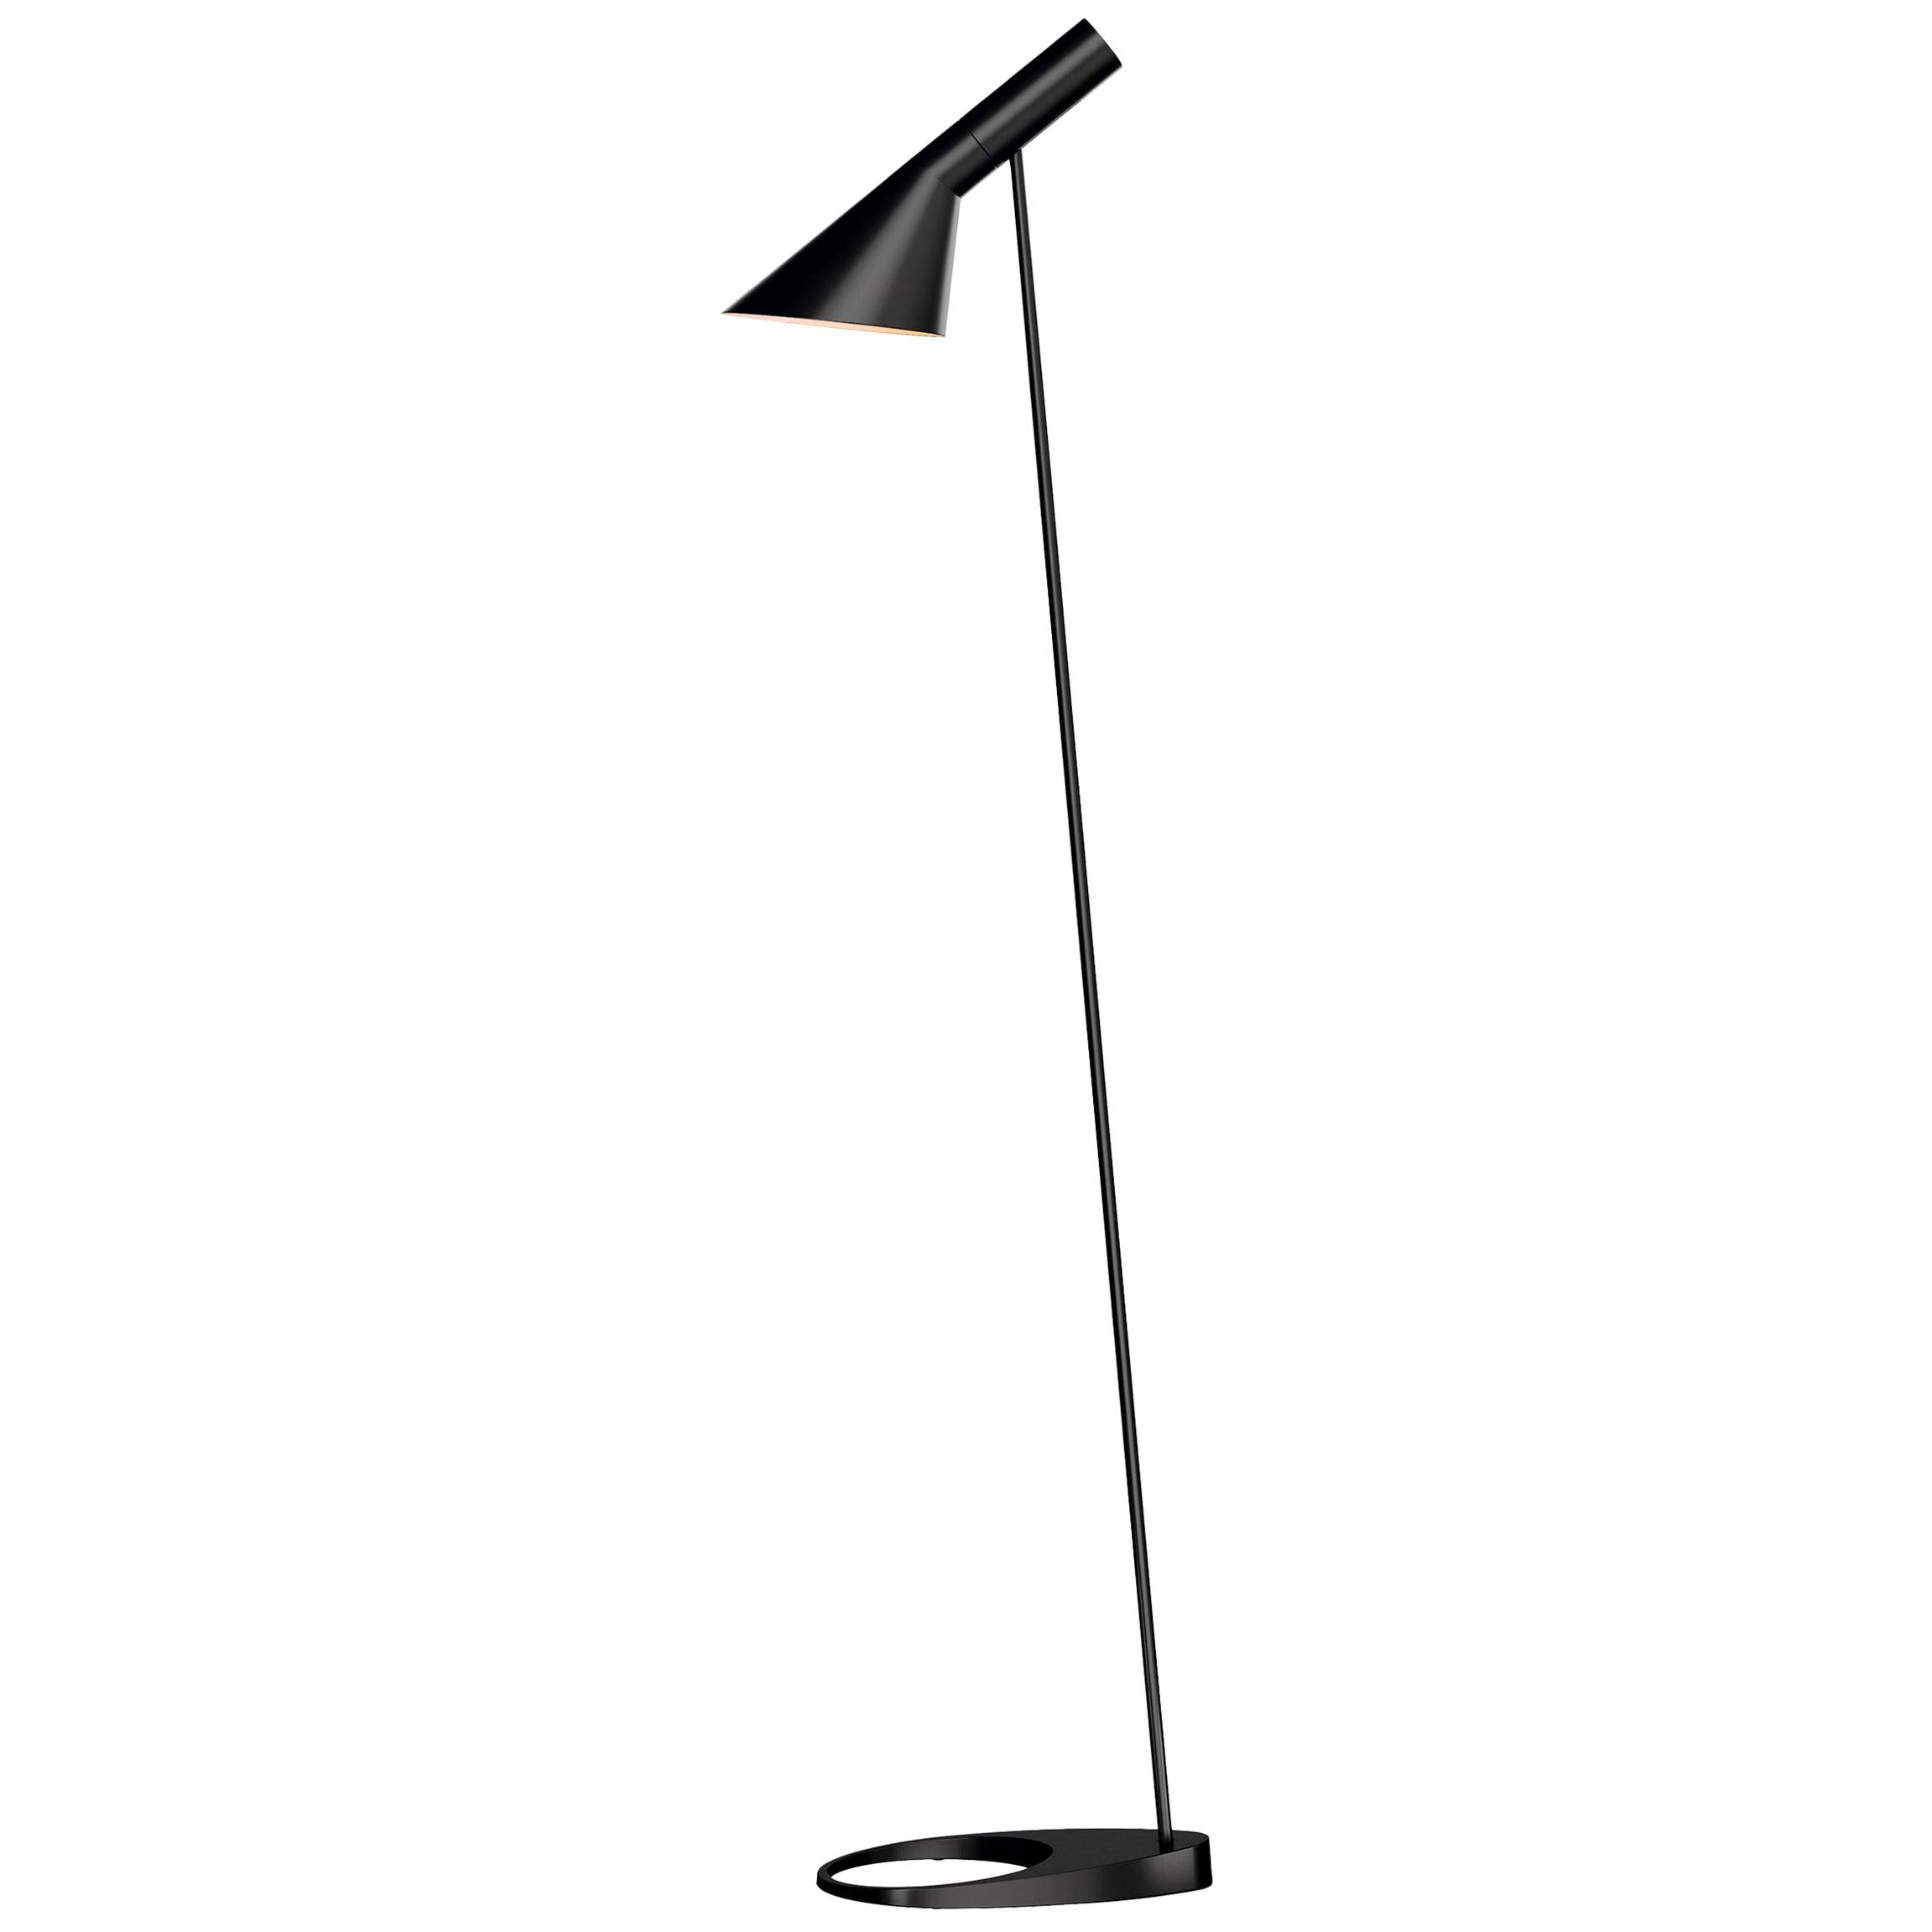 Arne Jacobsen AJ Floor Lamp in Black for Louis Poulsen